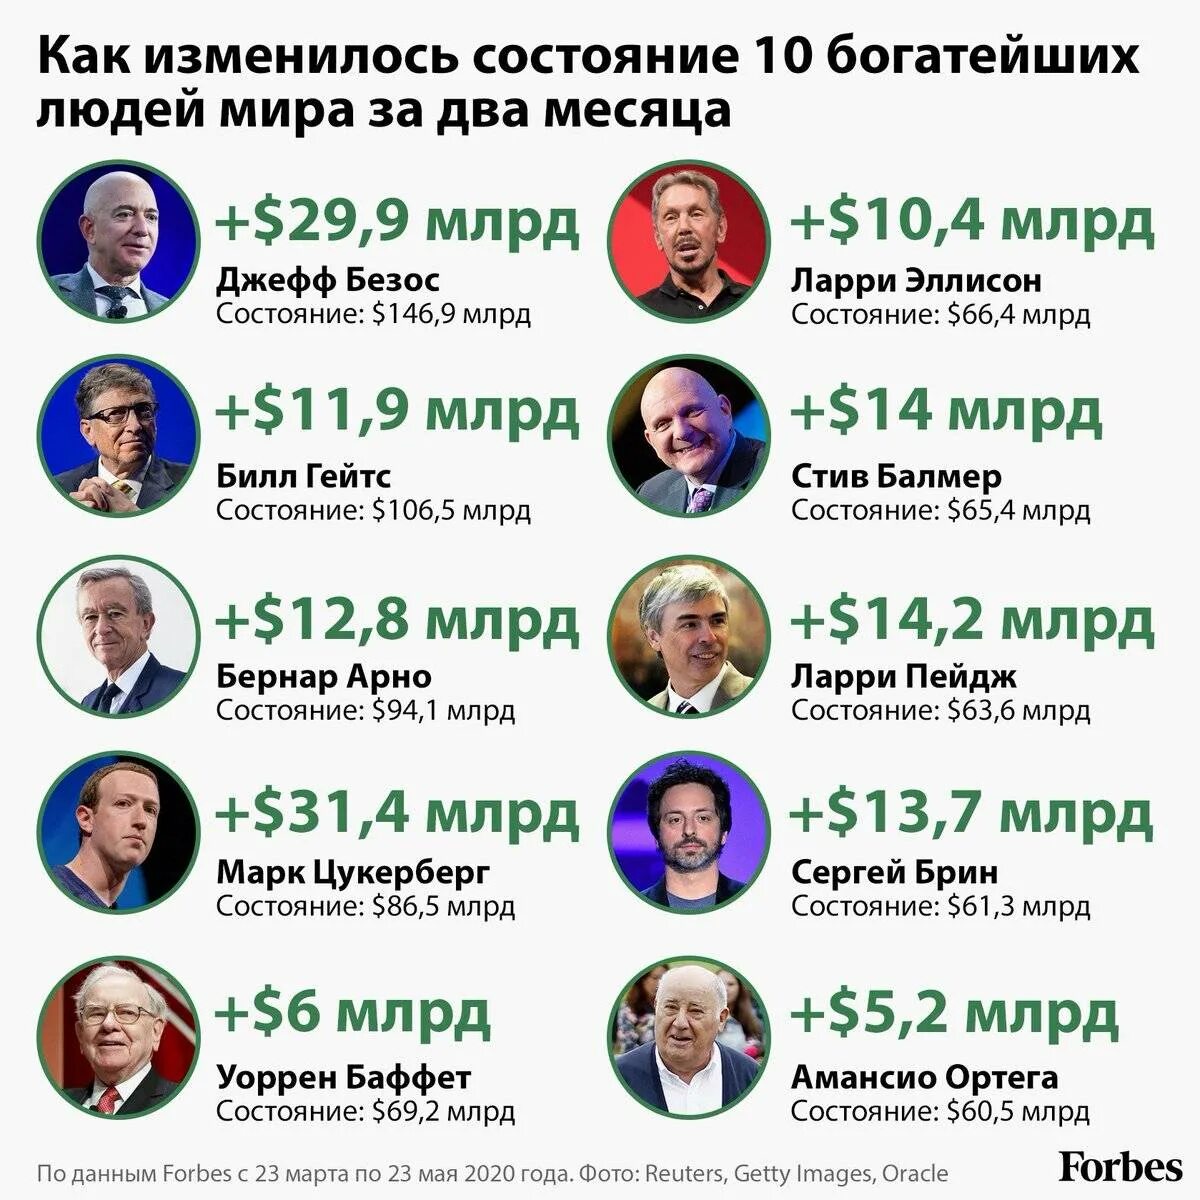 Форбс список самых богатых россии. Список форбс самых богатых людей. Список самых богатых людей в мире.